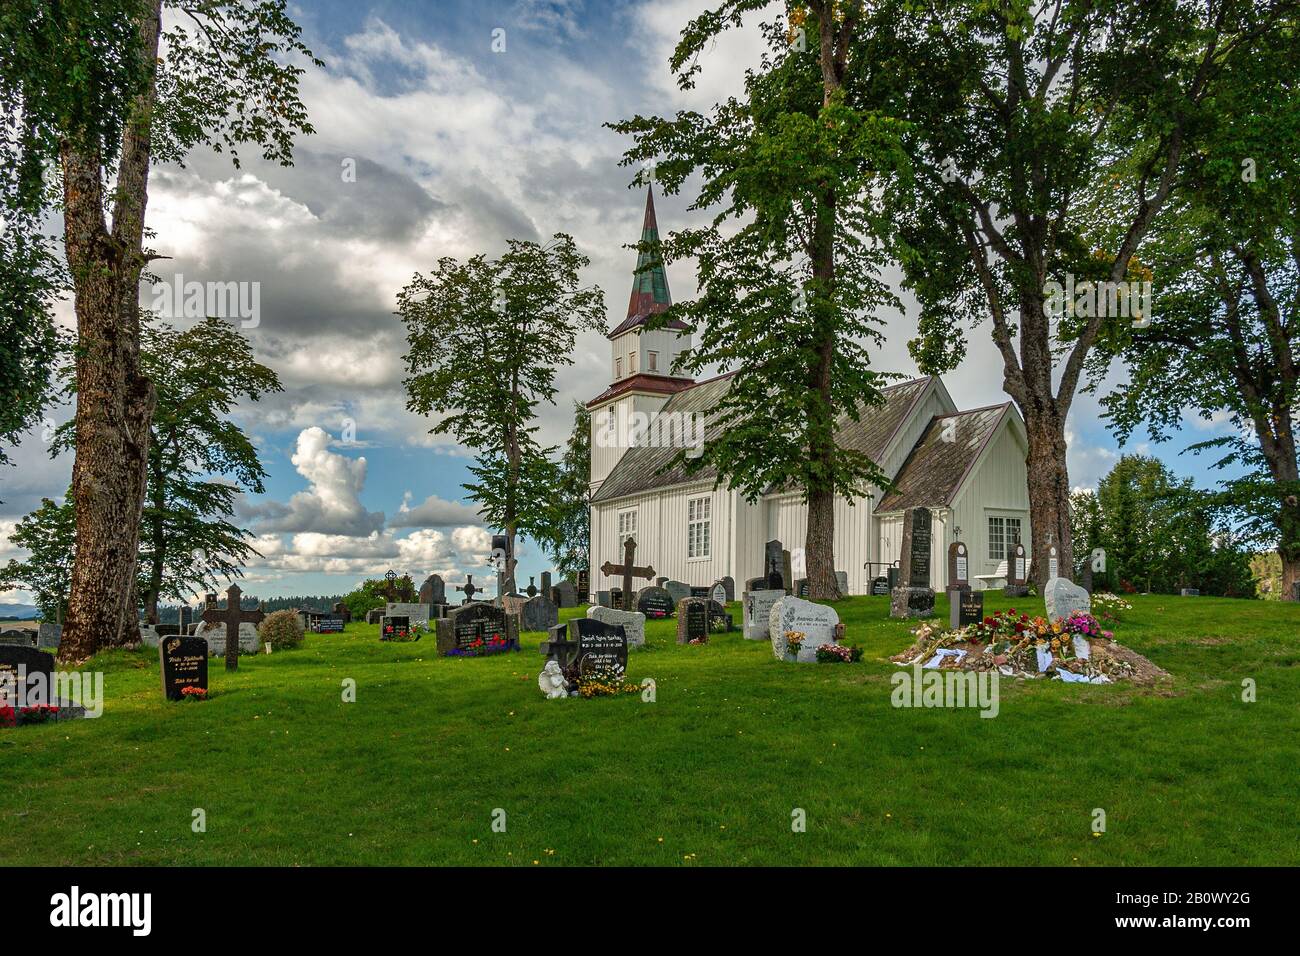 Iglesia de madera blanca rodeada de verdor, cementerio con tumbas en el suelo enterrado en el césped verde. Steinkjer, condado de Trøndelag, Noruega Foto de stock